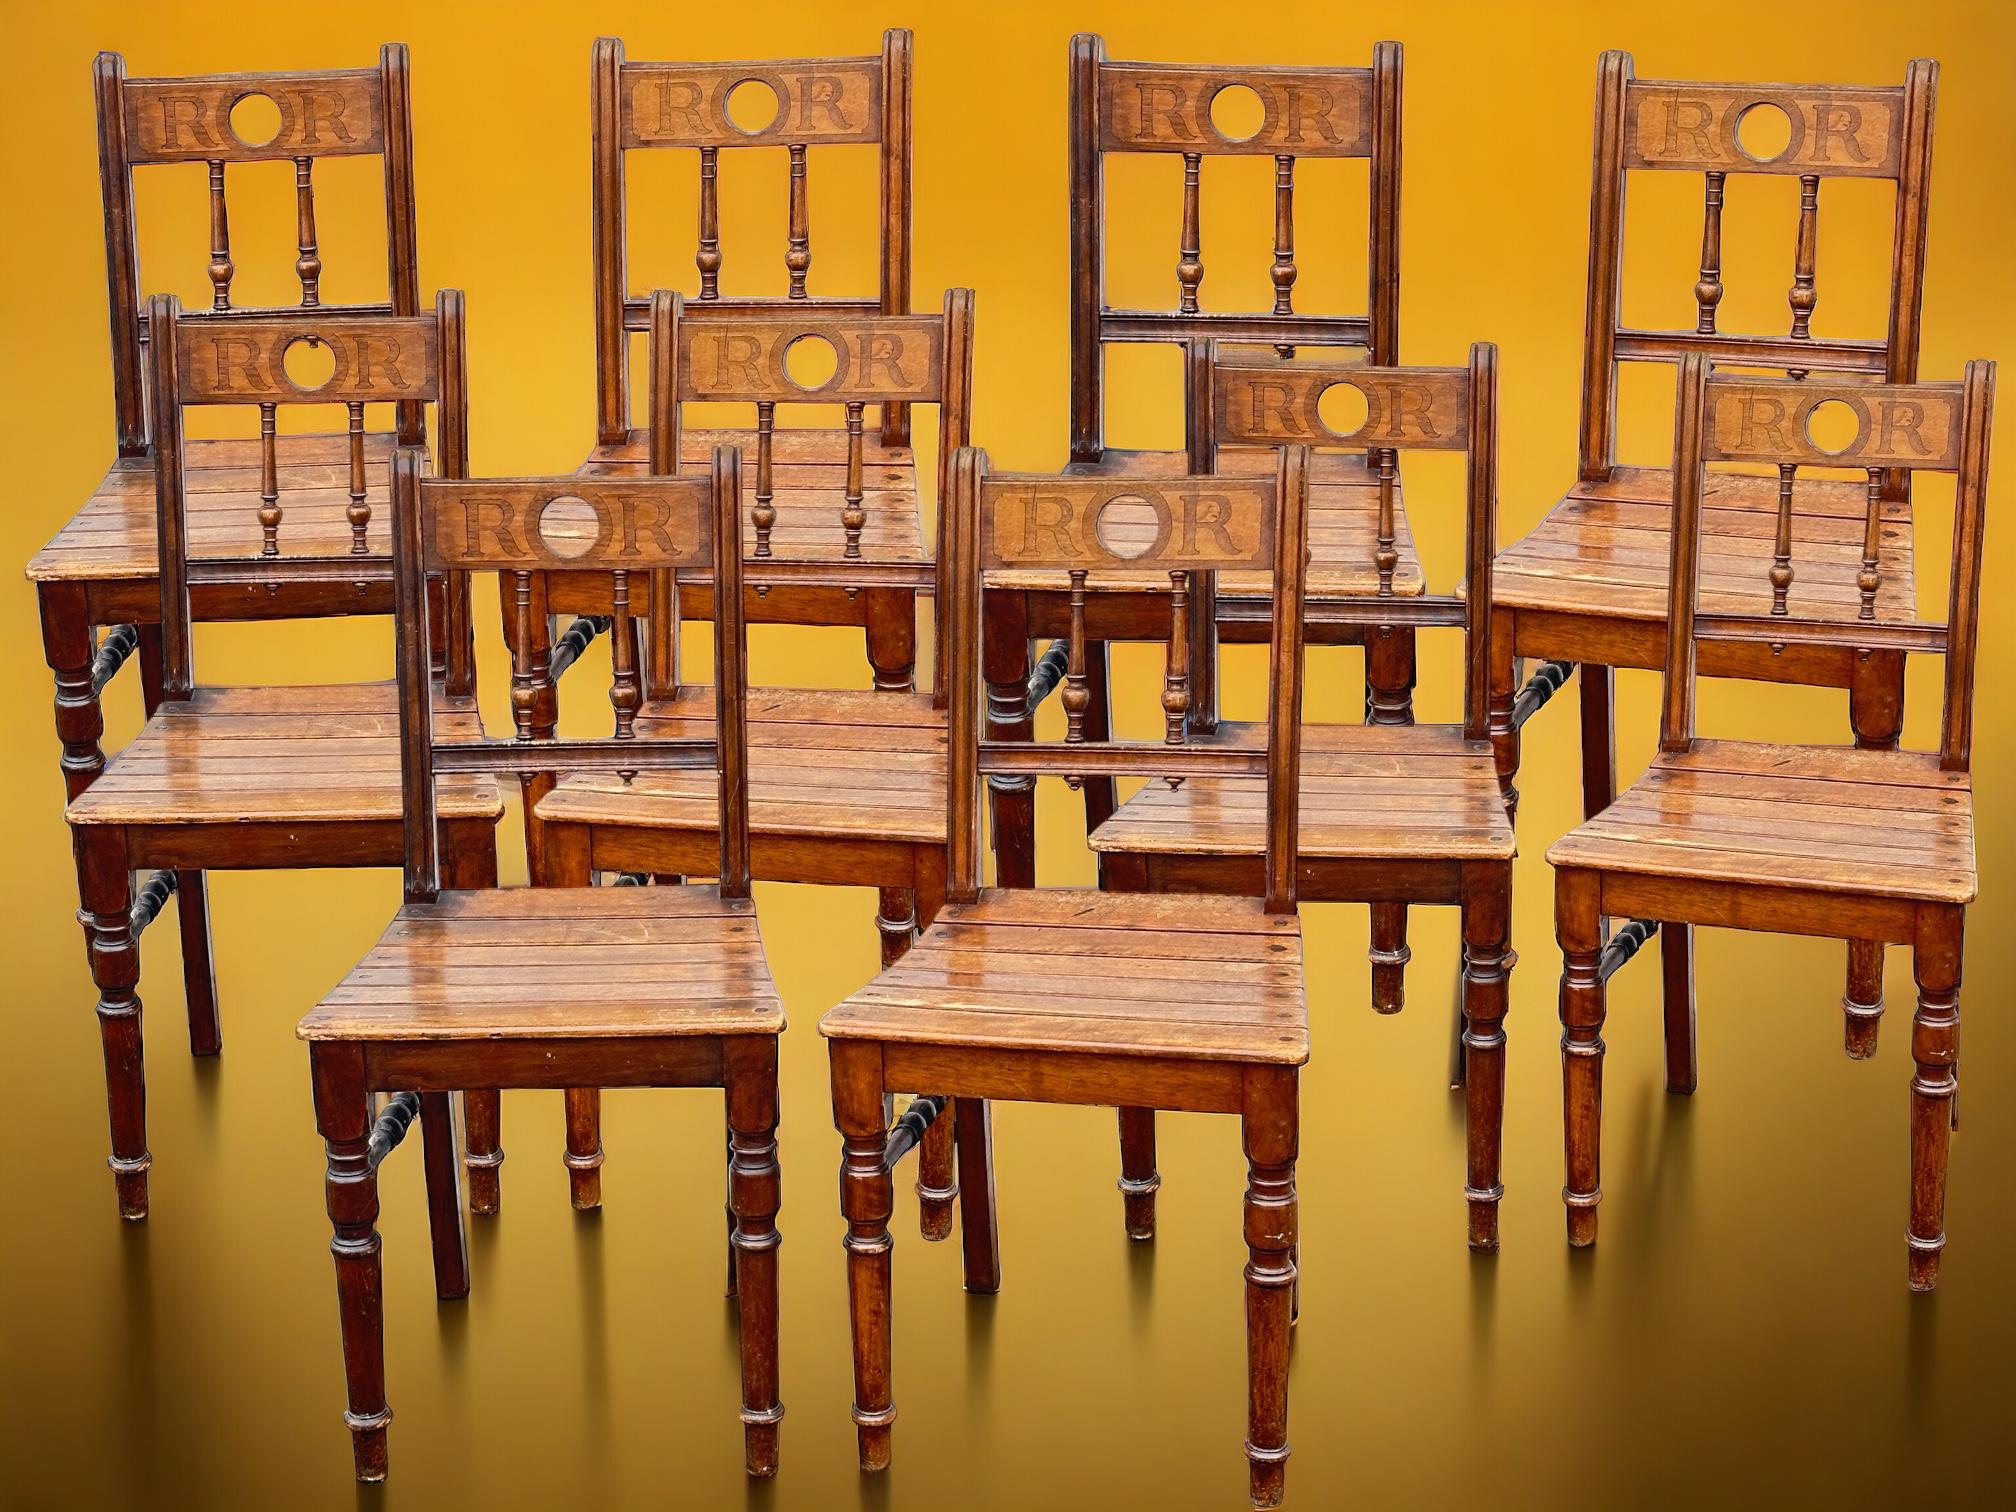 Un ensemble composé de 10 chaises provenant du château Ratibor dans la ville de Roth, en Bavière. Ces chaises ont été utilisées dans la salle à manger du château et dans d'autres pièces pendant de nombreuses années. Achetées lors d'une vente de